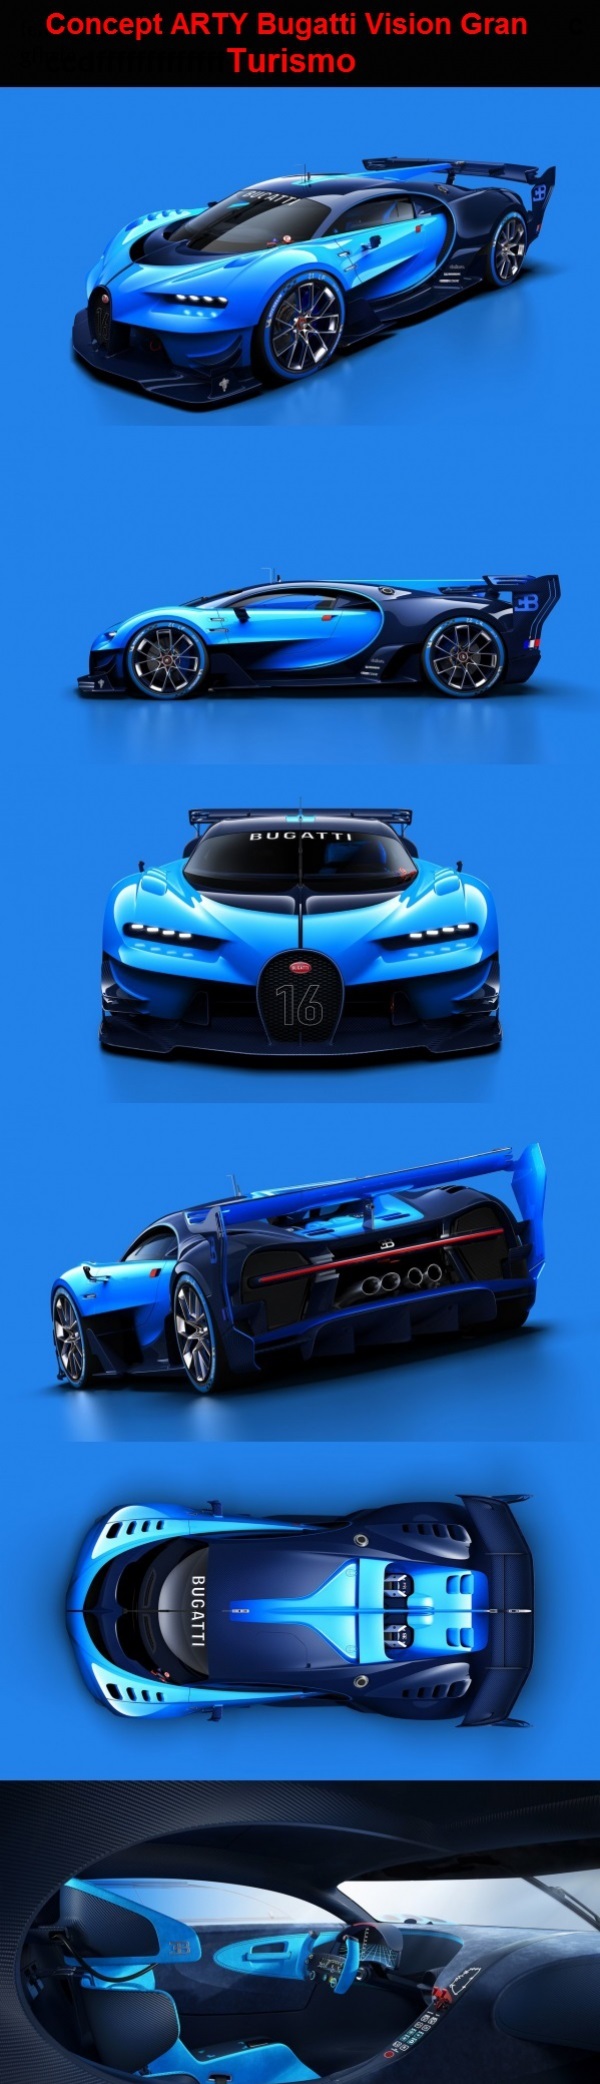 Concept ARTY Bugatti Vision Gran Turismo Obrazki   